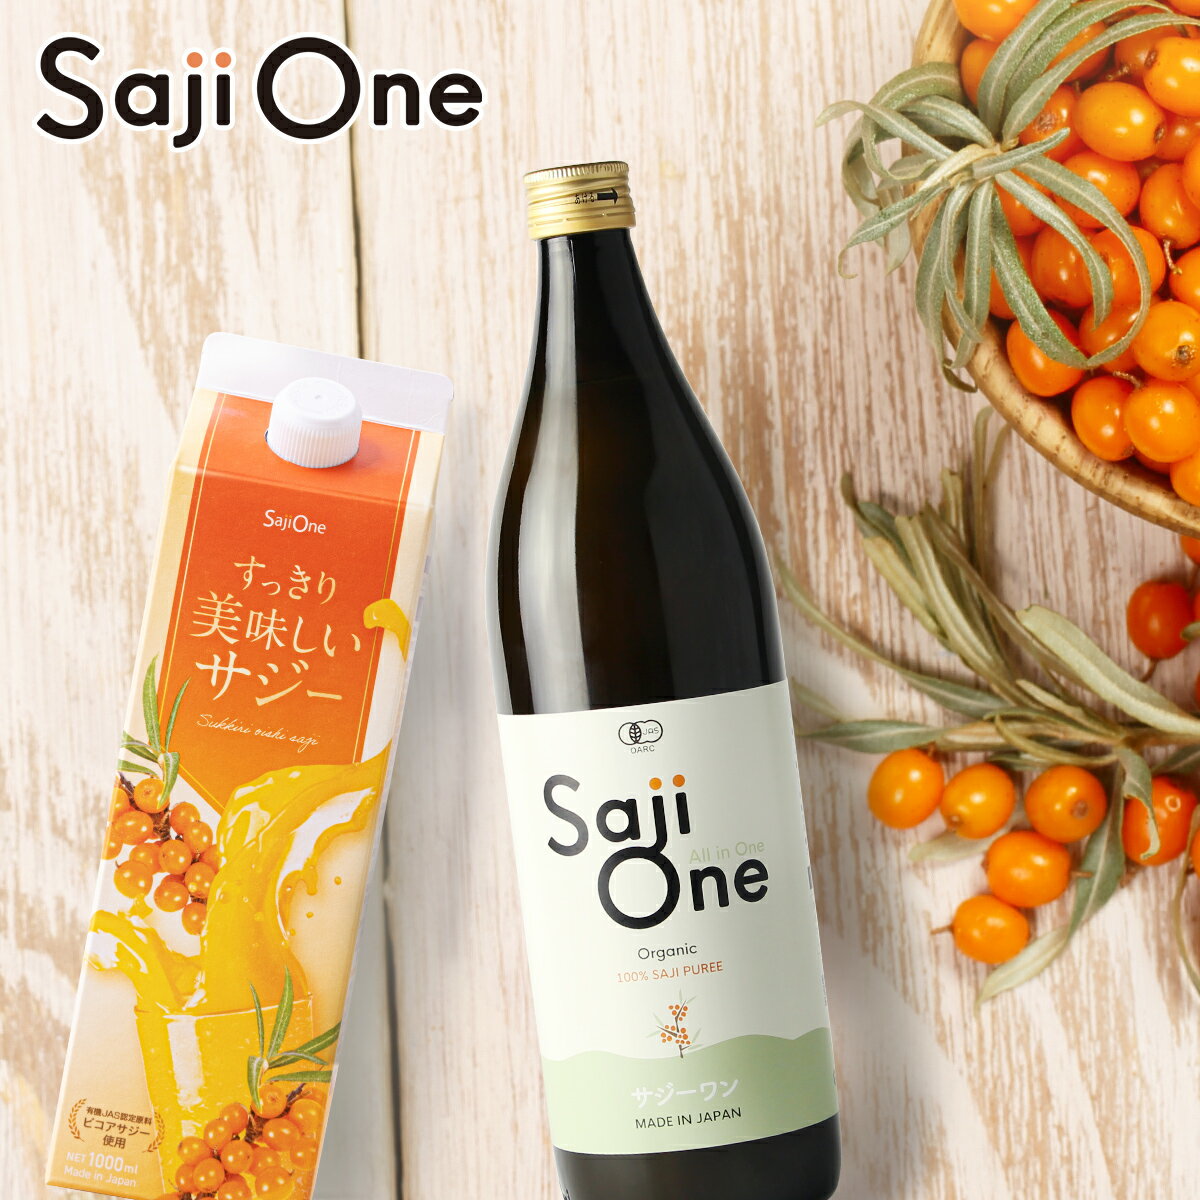 サジージュース SajiOne 2本セット サジー SajiOneオーガニック すっきり美味しいサジー 鉄分 美容 健康 栄養補給 無添加 ストレート オレンジ ゆず シーベリー 沙棘 サジーワン 豊潤 送料無料